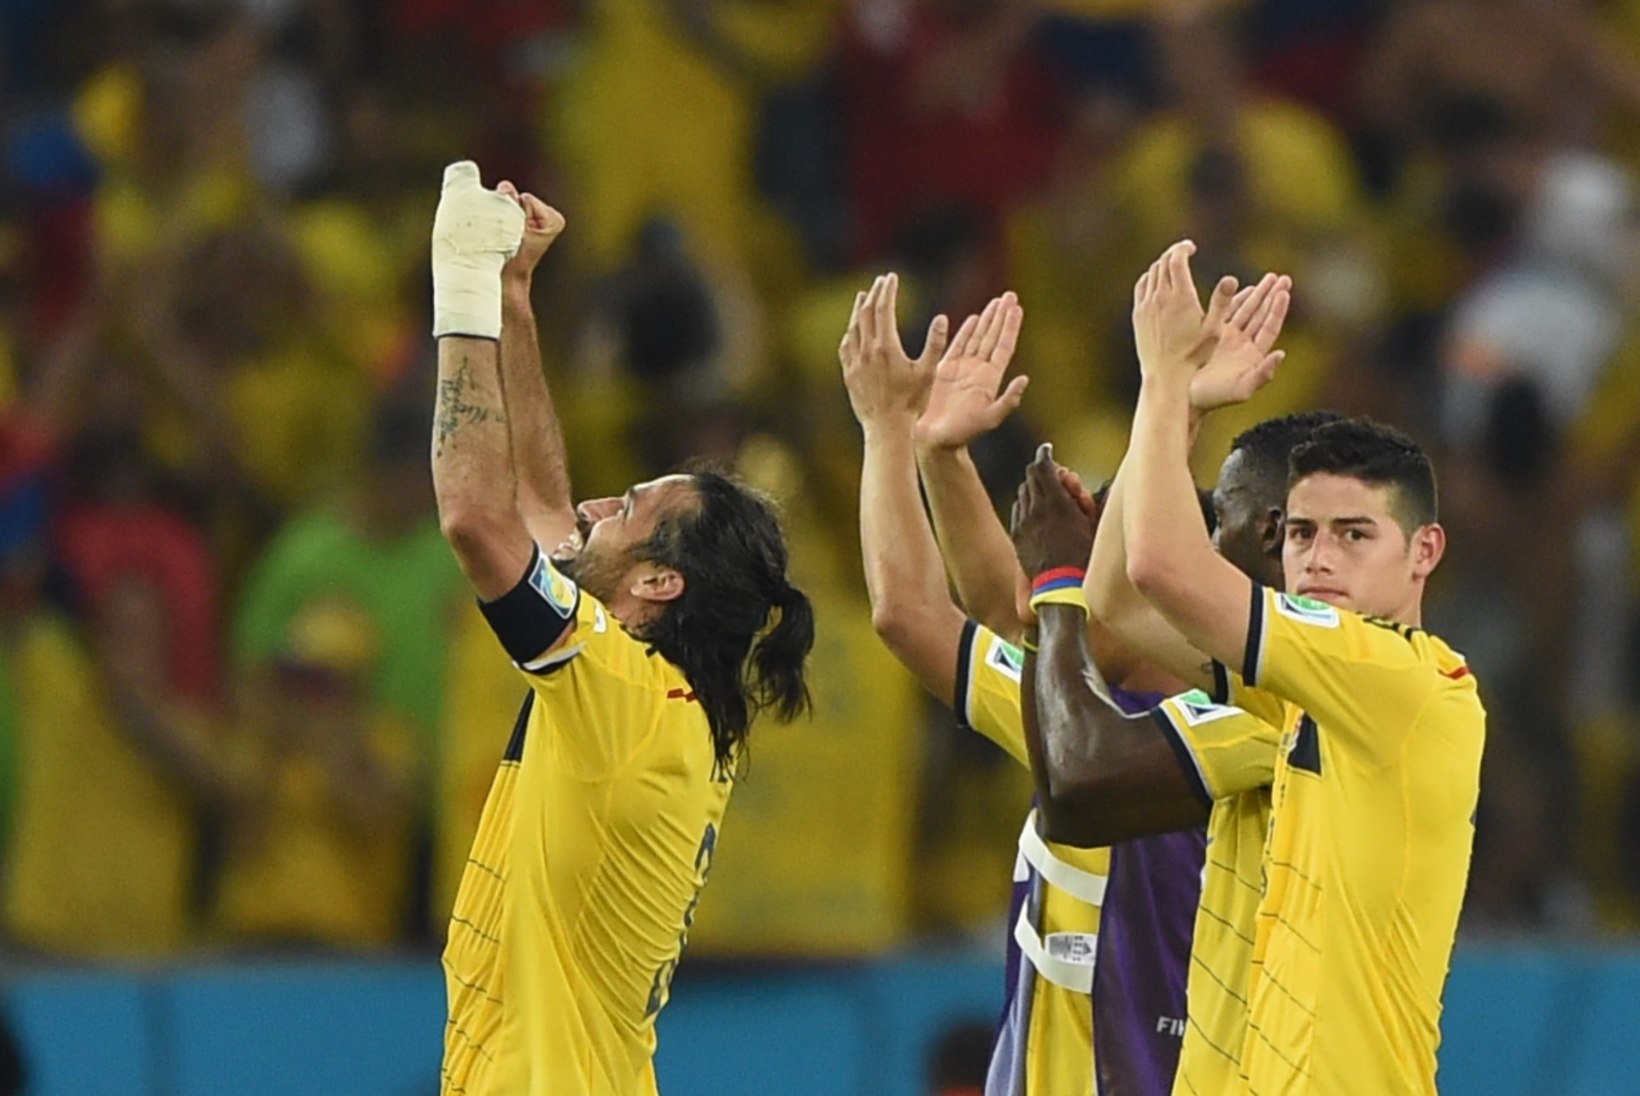 GALERII: Suarezeta mänginud Uruguai Kolumbiale vastu ei saanud